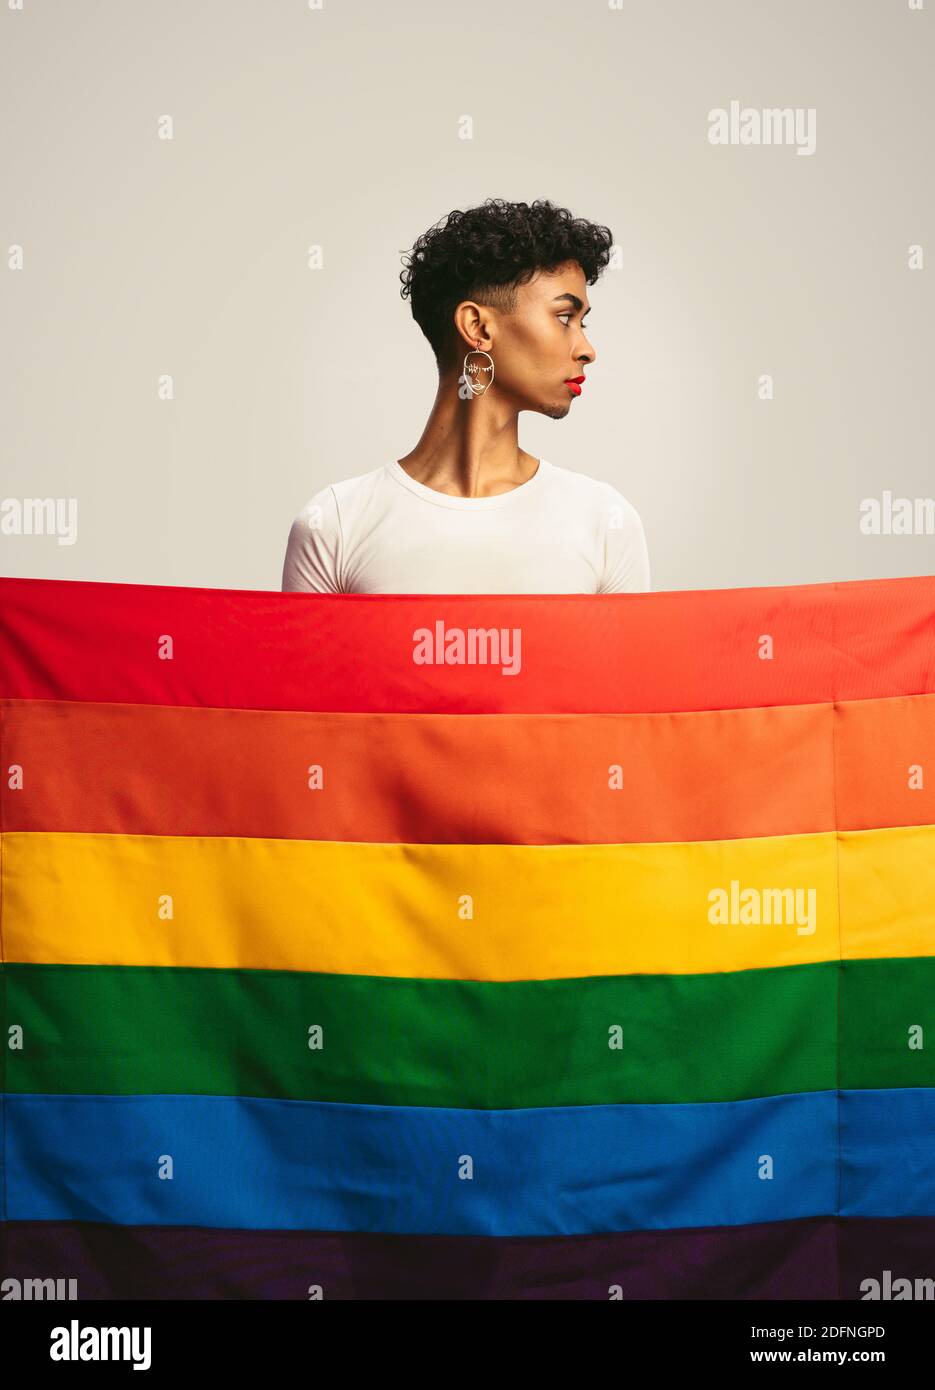 Jeune homme avec maquillage et boucles d'oreilles debout derrière le drapeau de fierté gay. Homme transgenre derrière le drapeau lgbtq. Banque D'Images